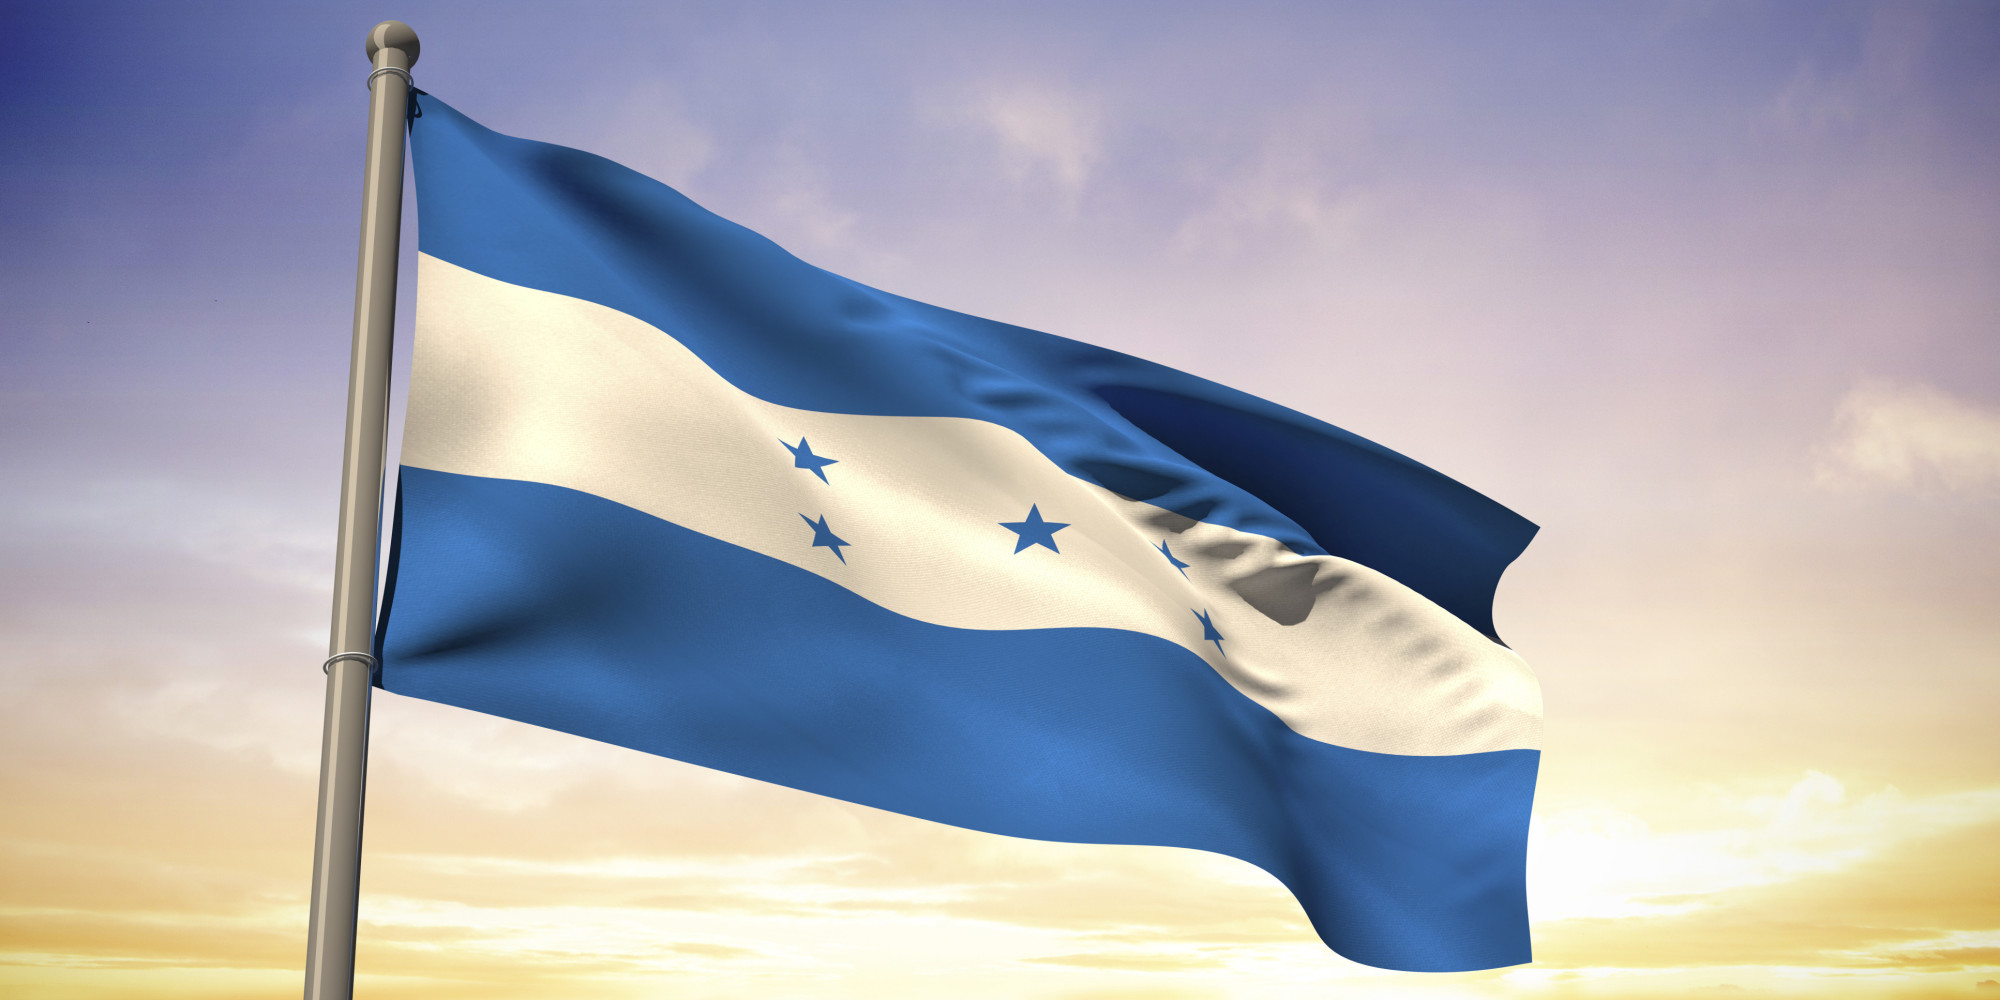 O HONDURAS FLAG Facebook 